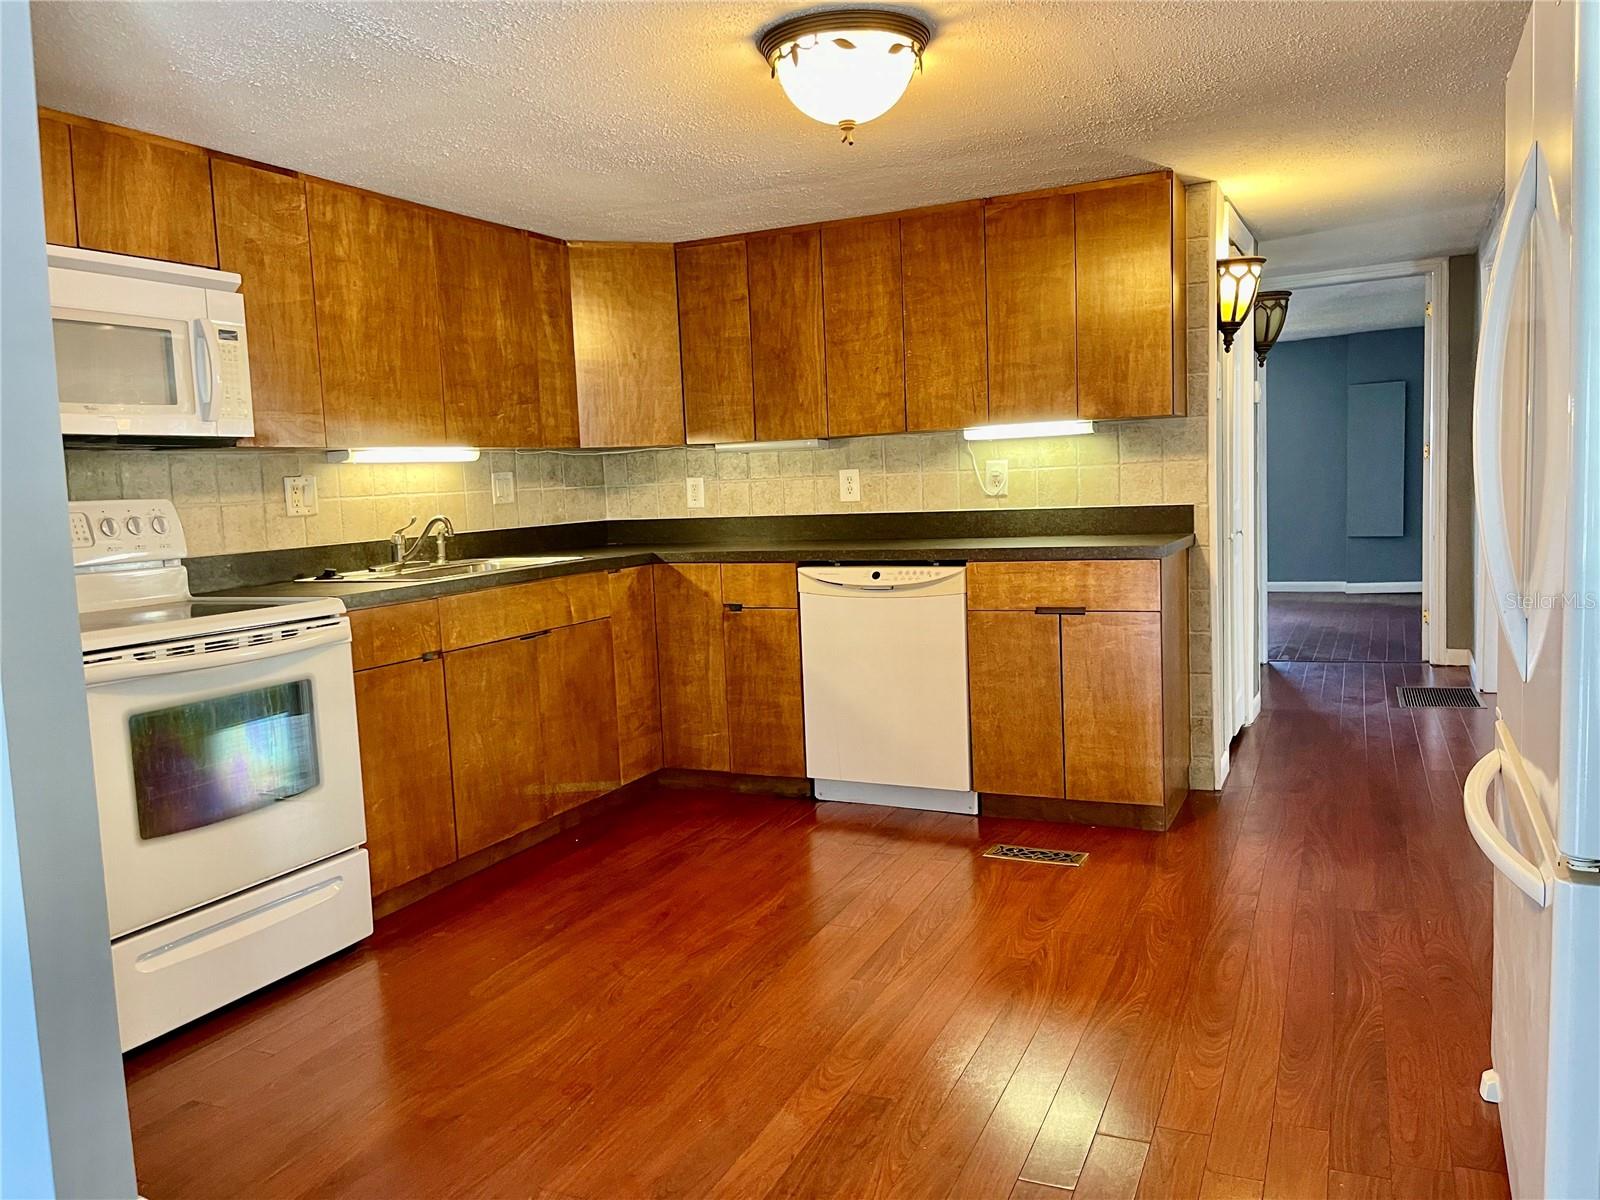 Updated kitchen, laminate flooring